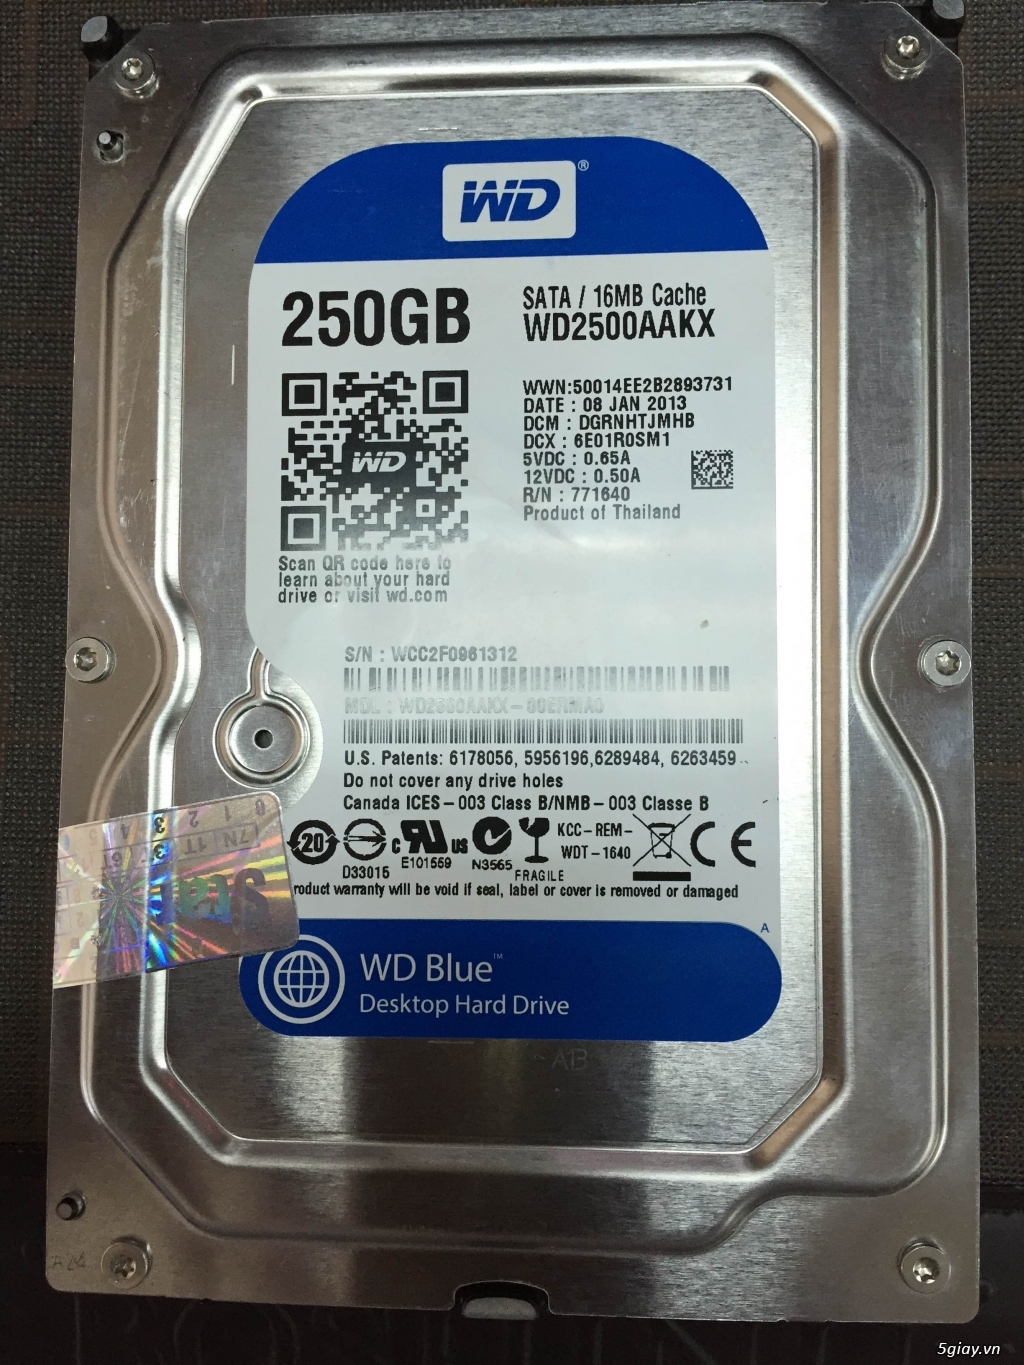 2 cái HDD 250GB, ram 3 4gb – 1600 mới mua Phát đạt. = 1.000k - 5